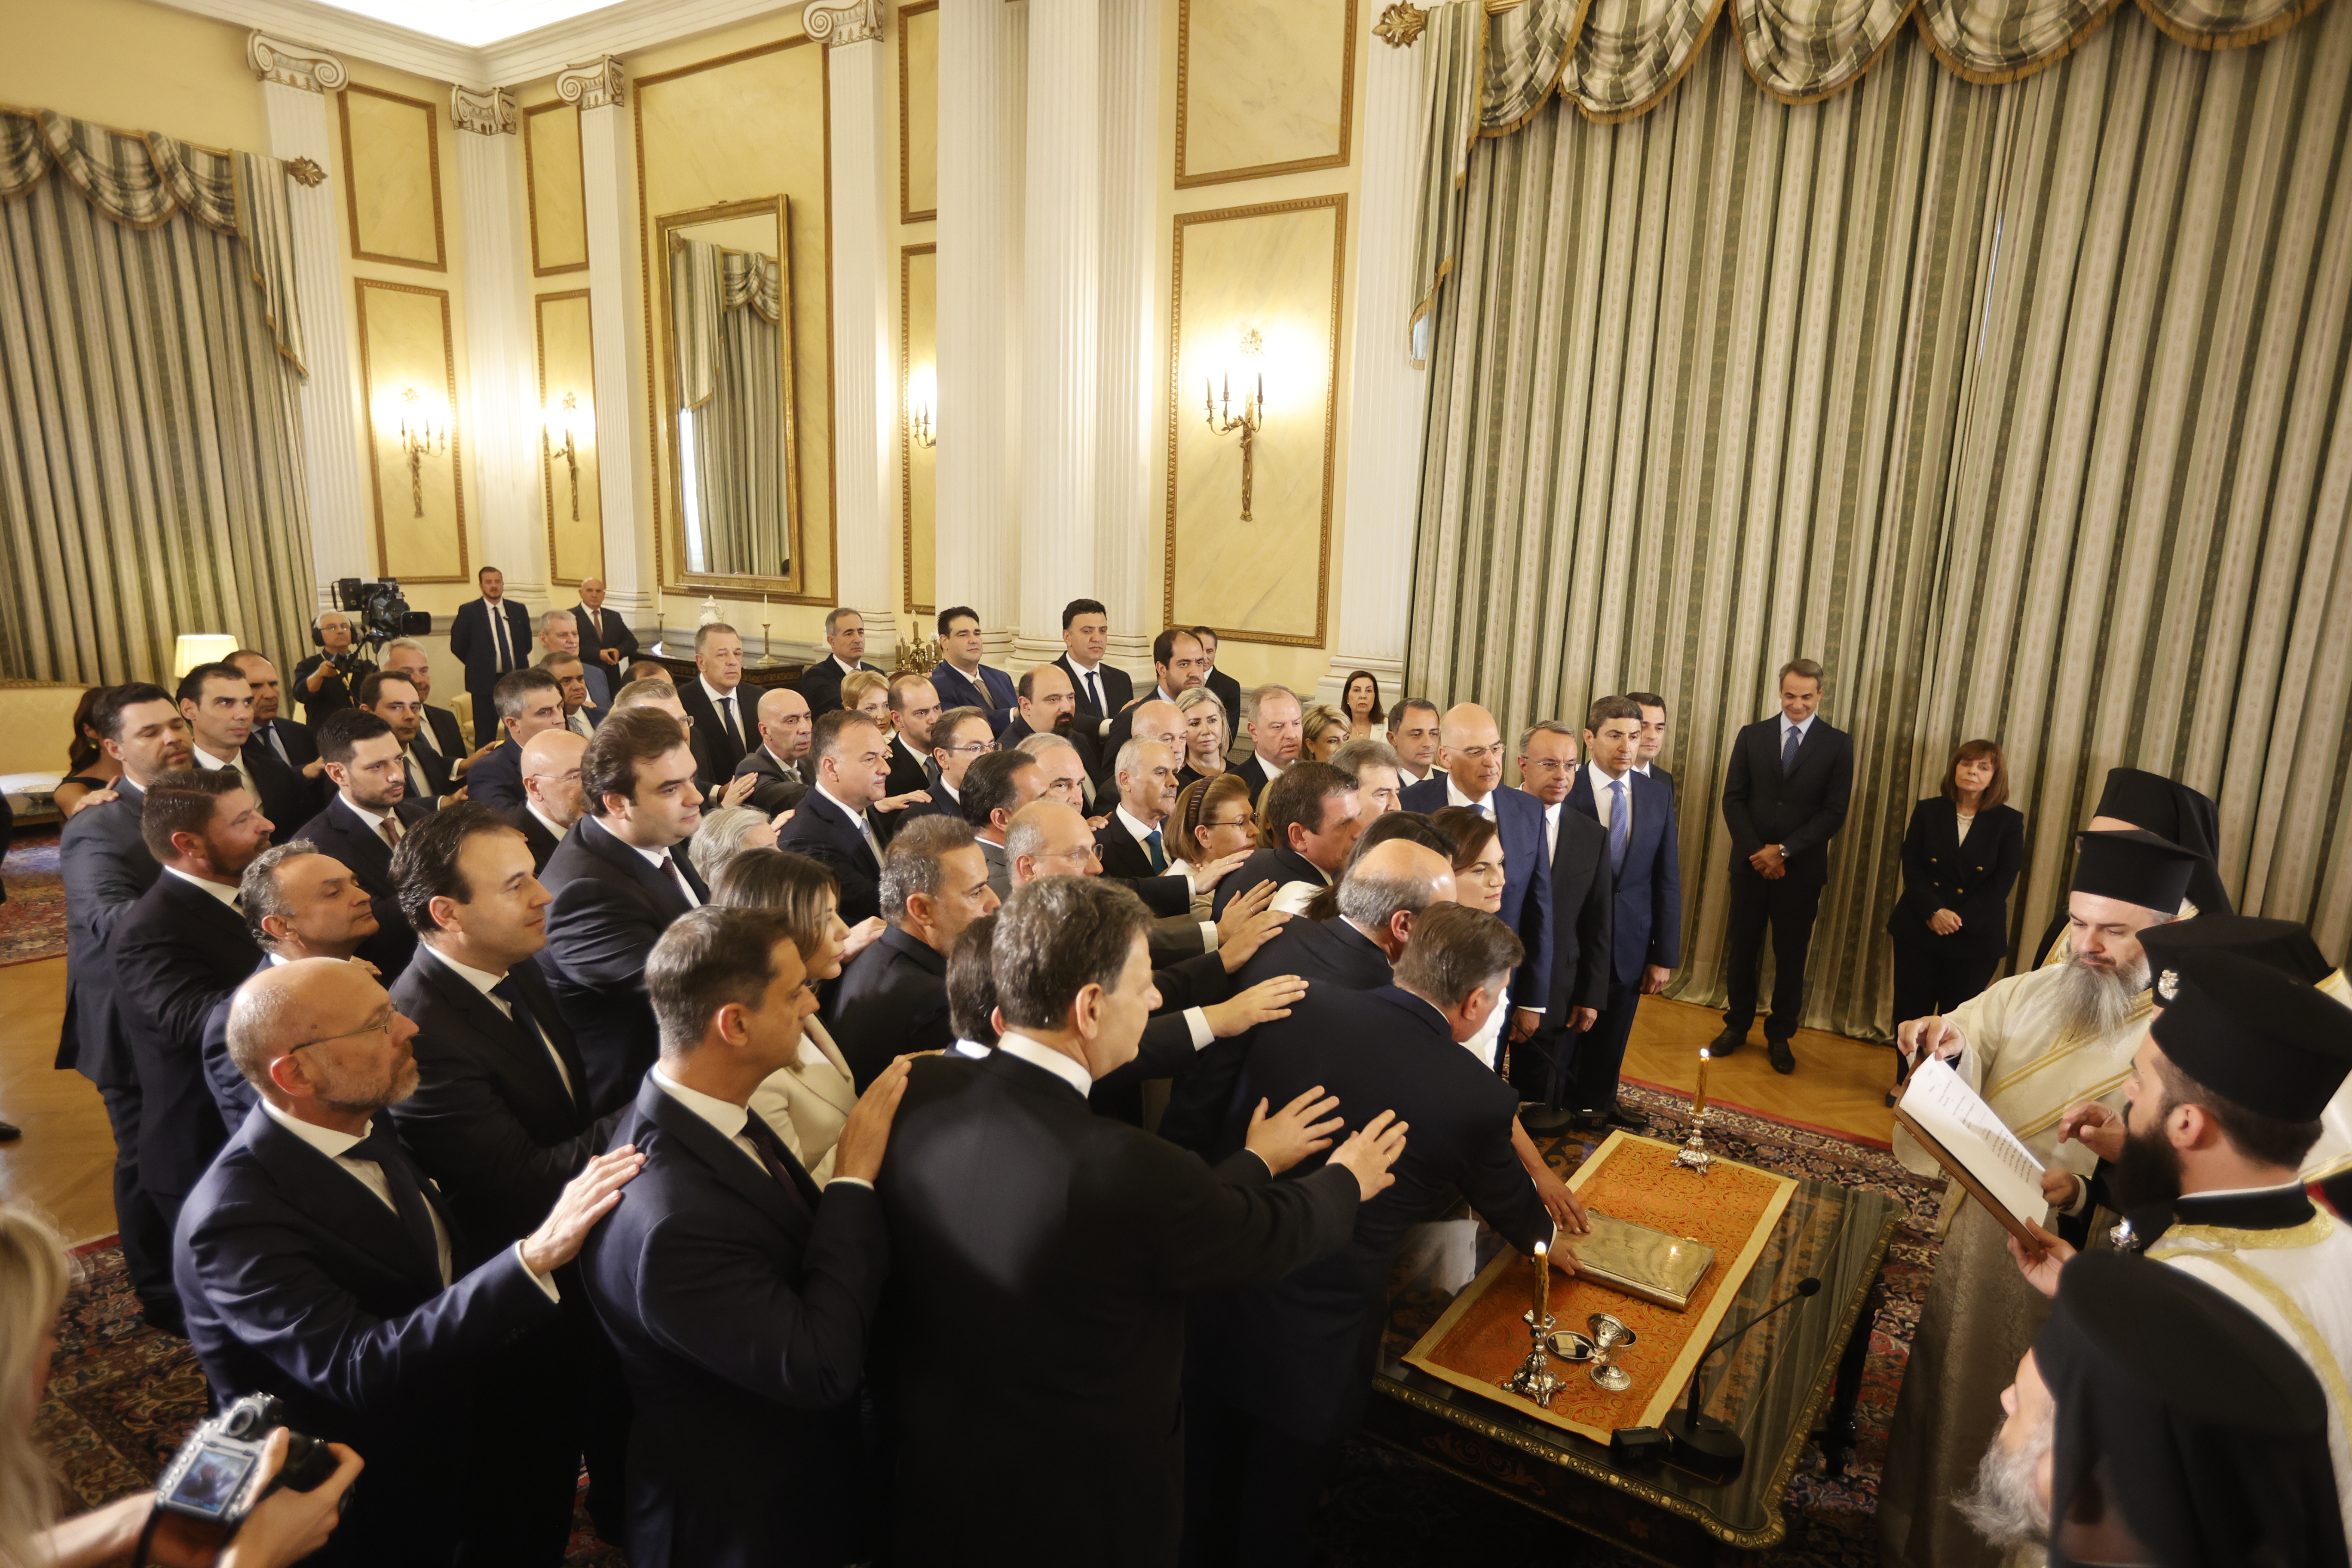 Ορκίστηκε η νέα κυβέρνηση στο Προεδρικό Μέγαρο ενώπιον της ΠτΔ